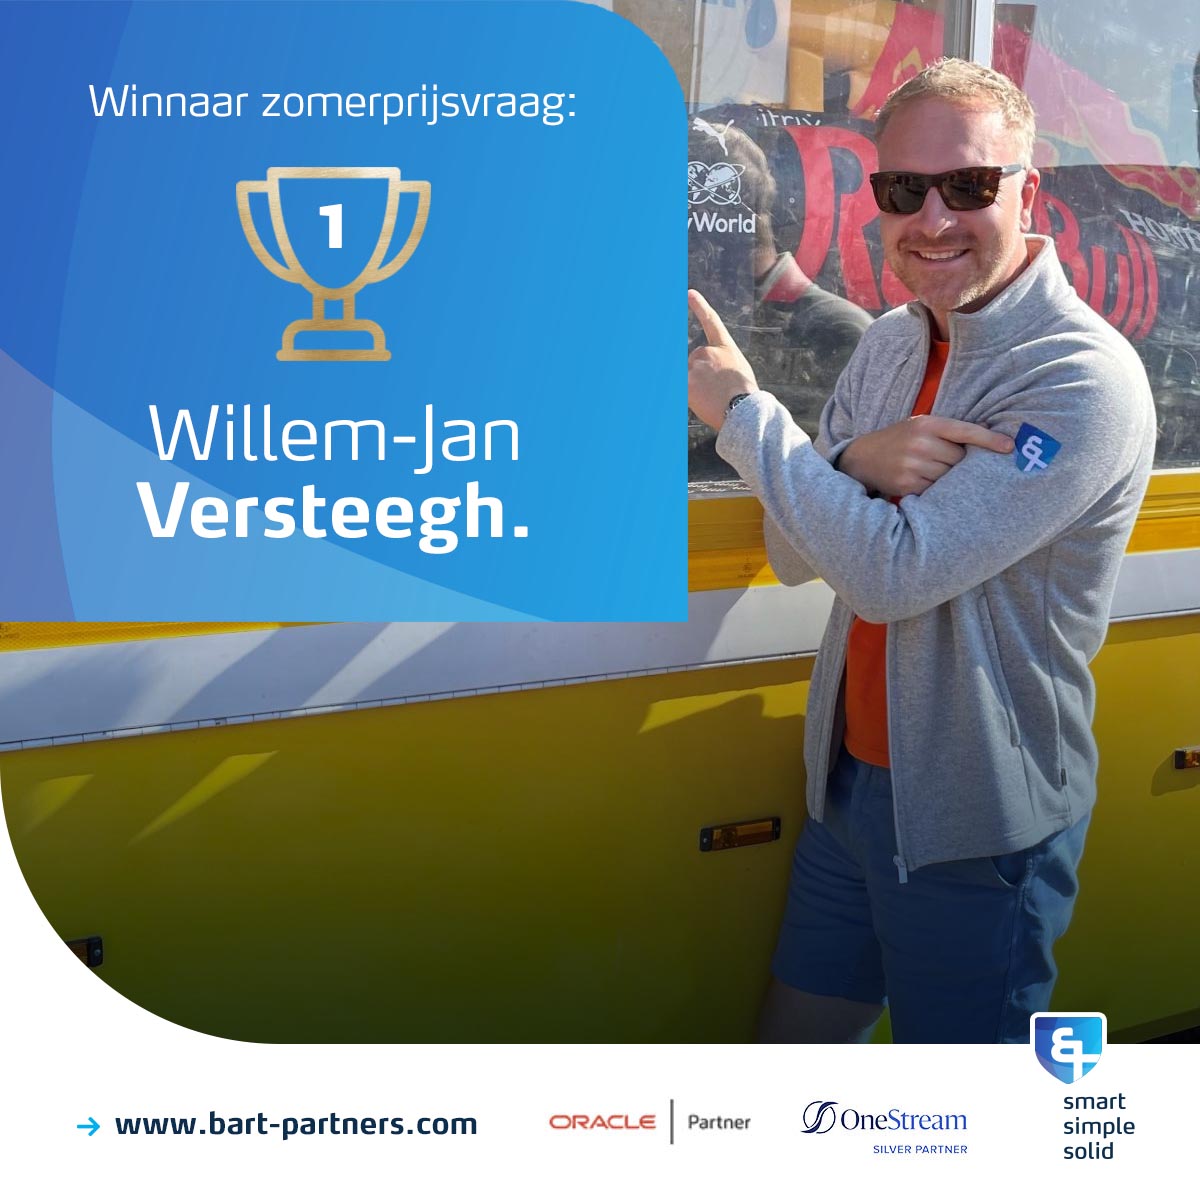 01 Winnaar Zomerprijsvraag Willem-Jan Versteegh